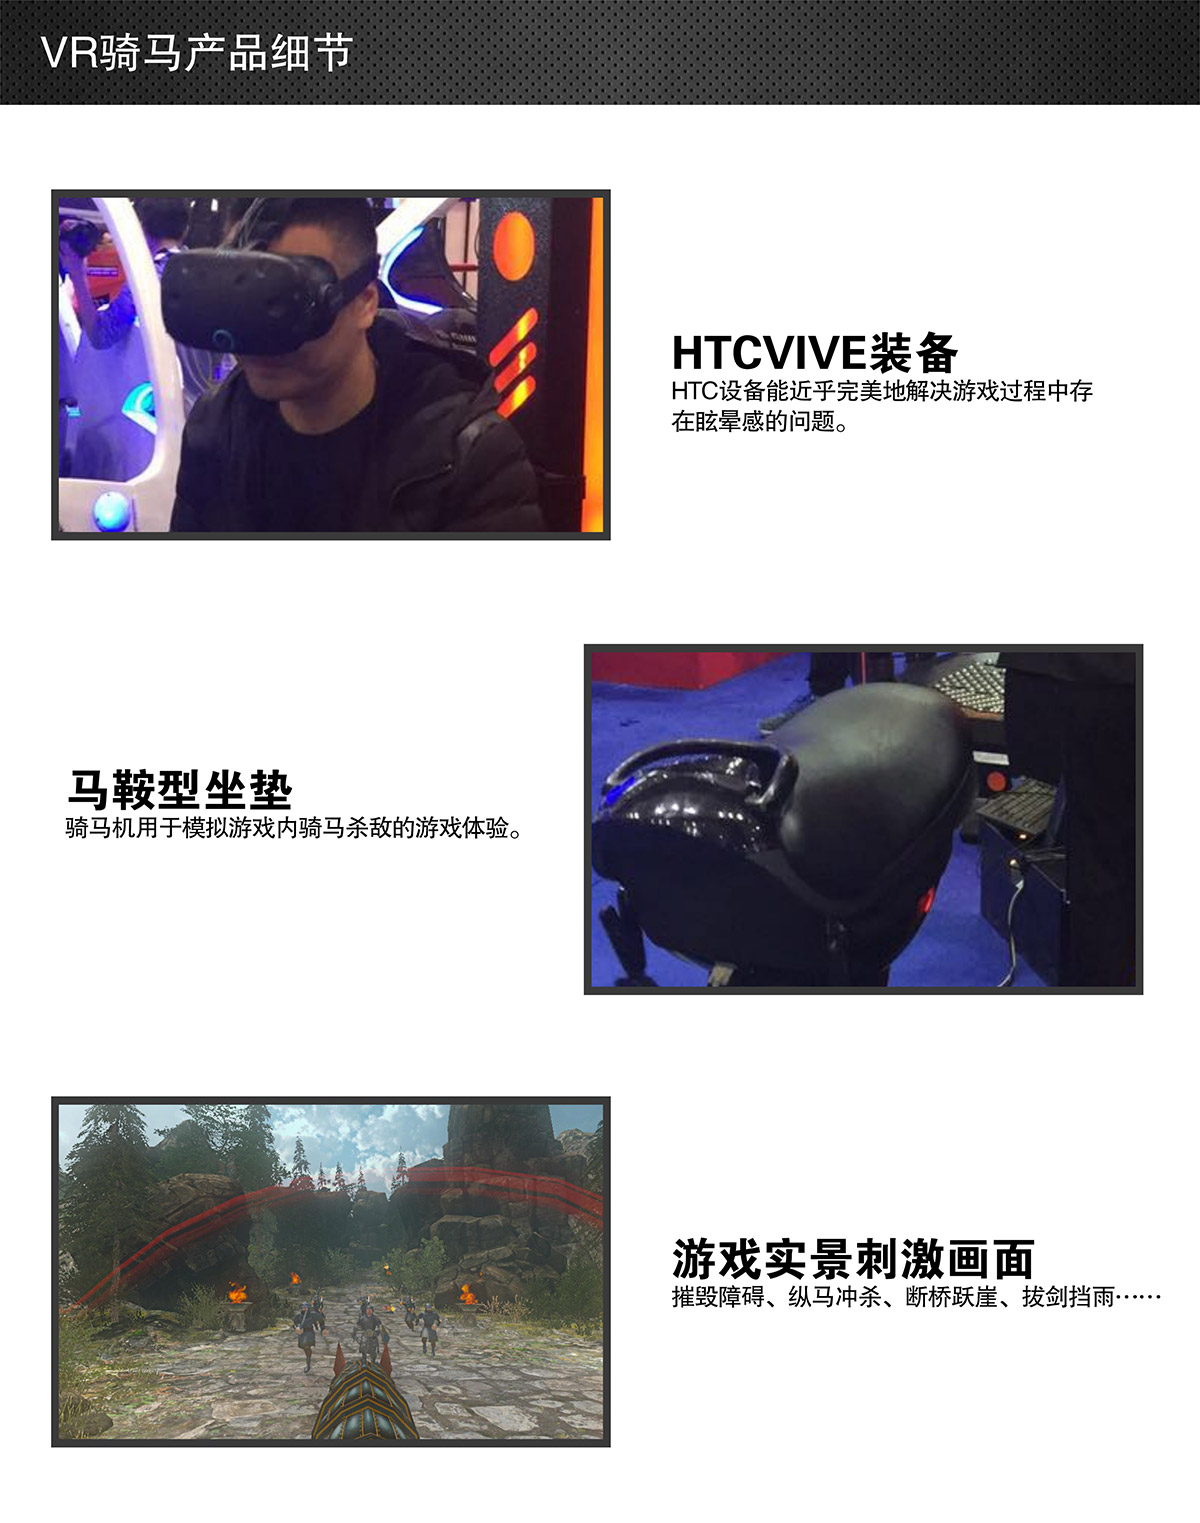 互动电影VR骑马细节展示.jpg